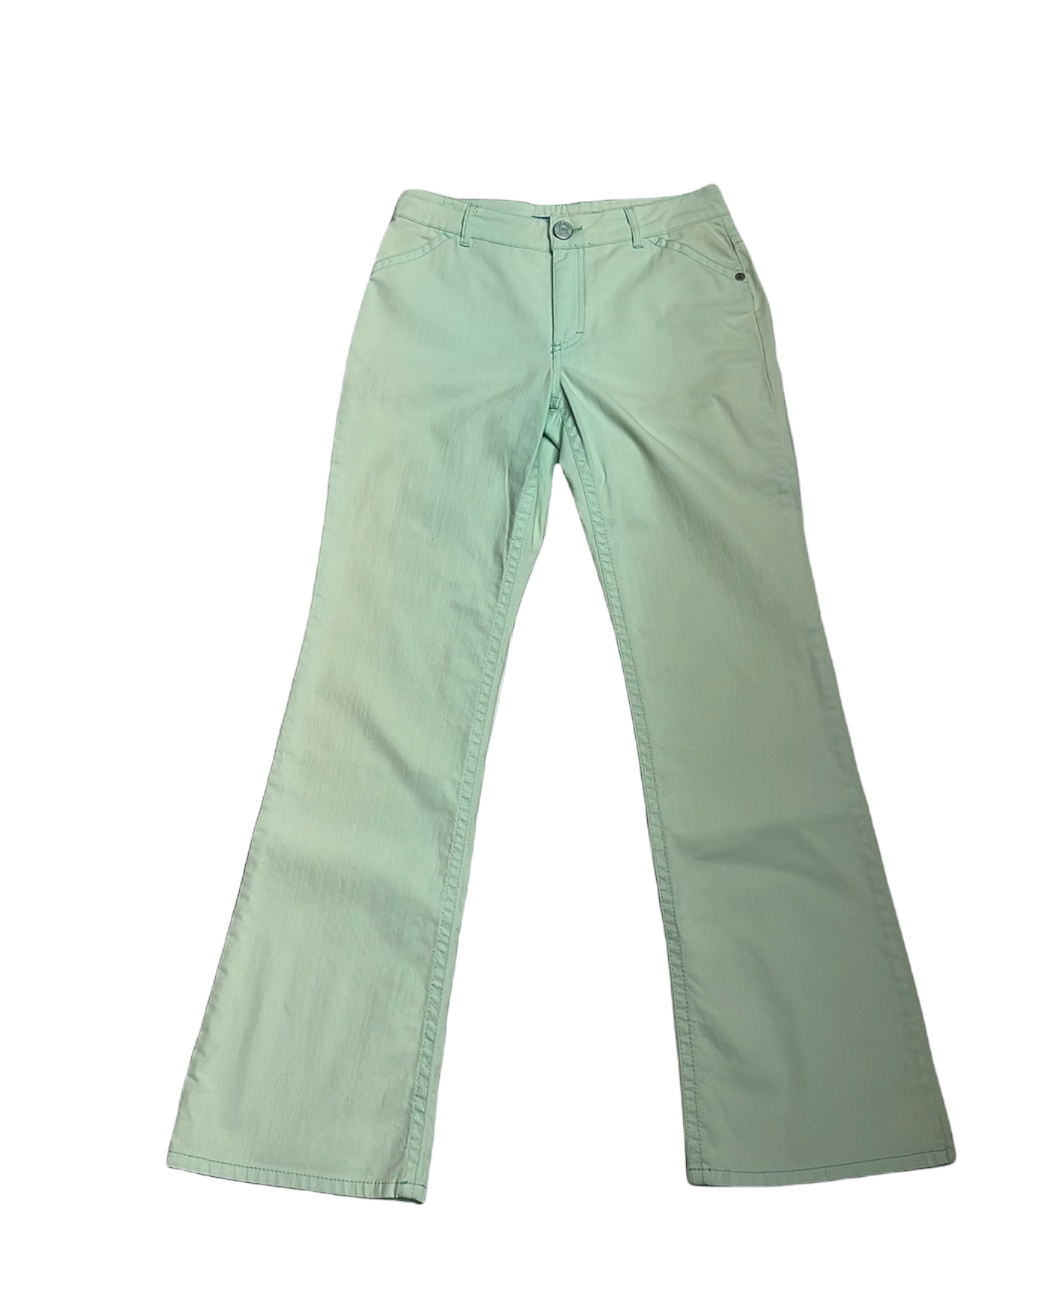 Vintage Light Green Jeans - 28